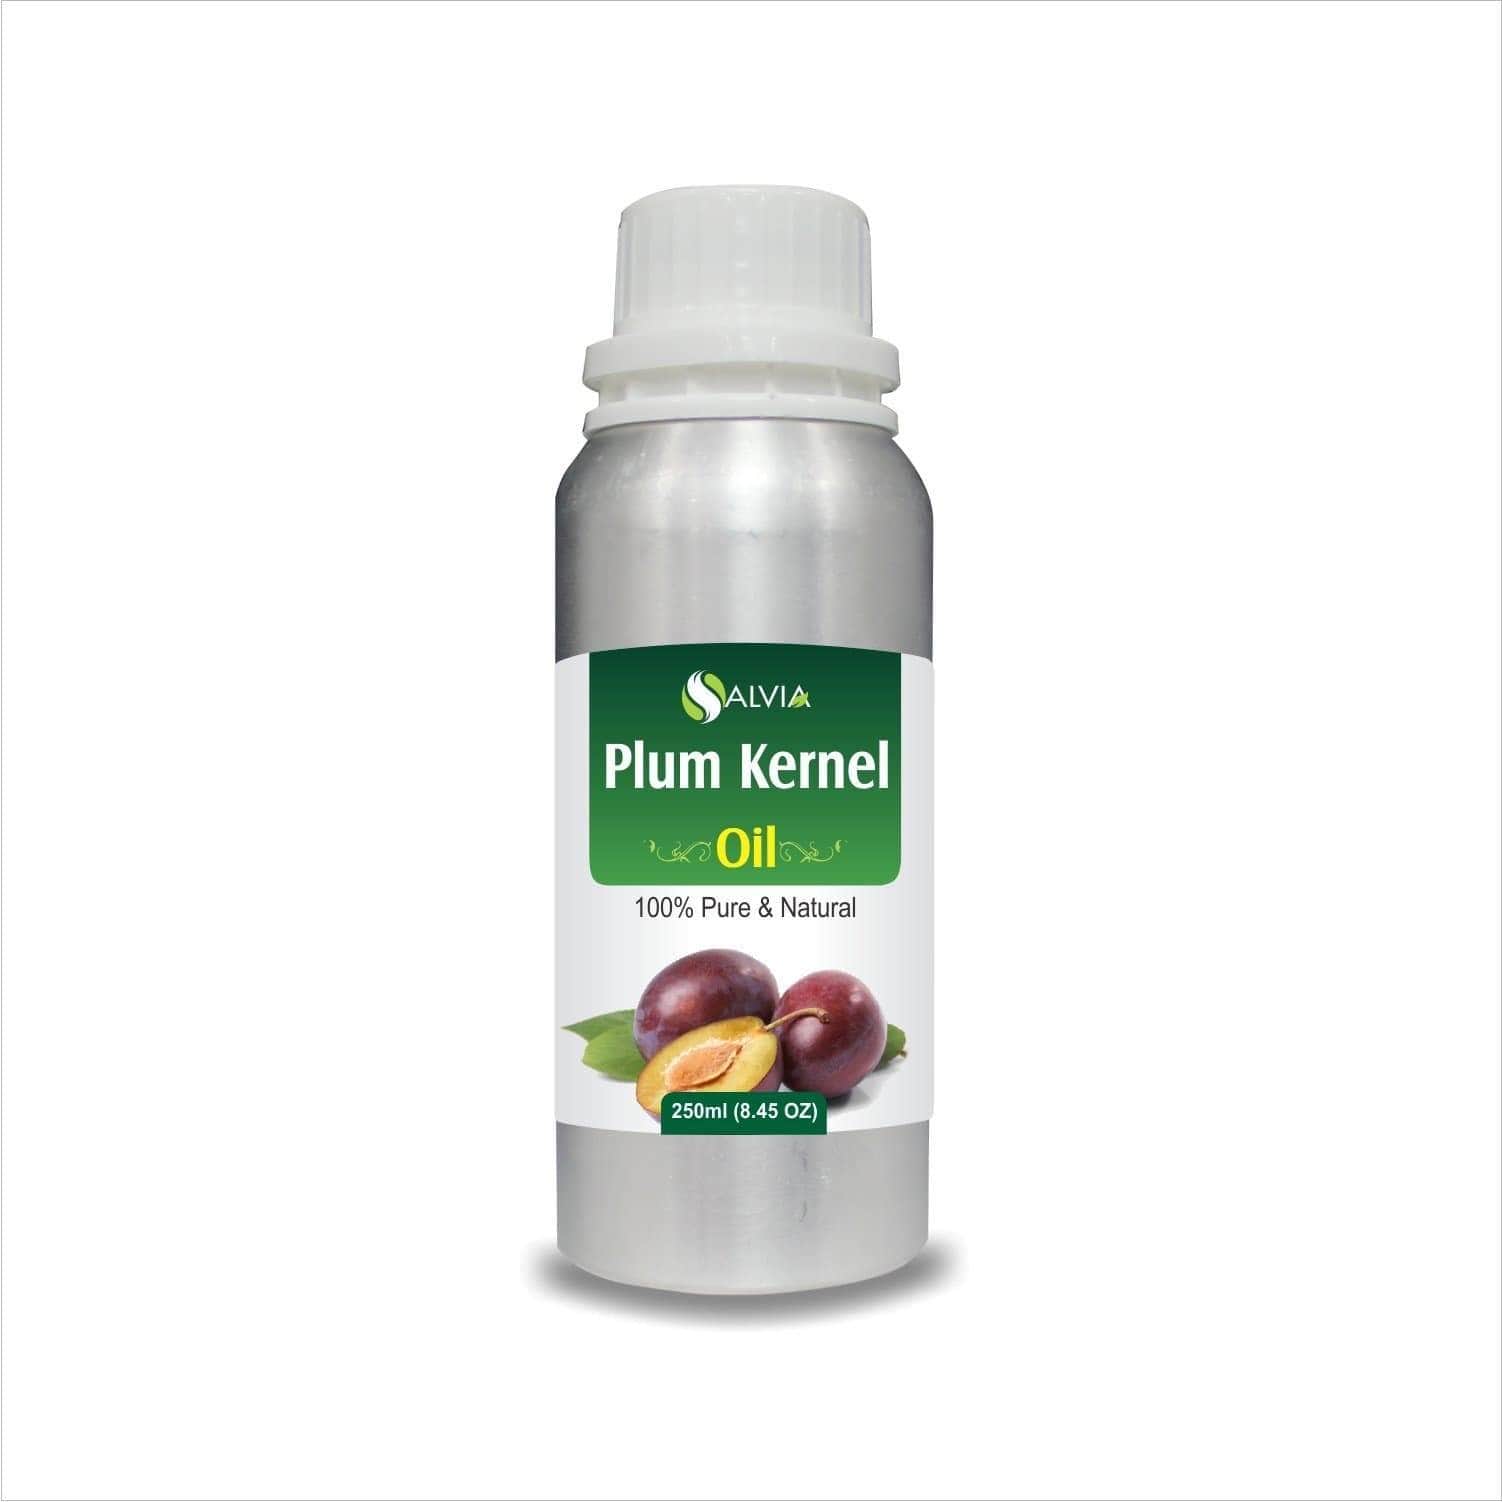 plum kernel oil benefits